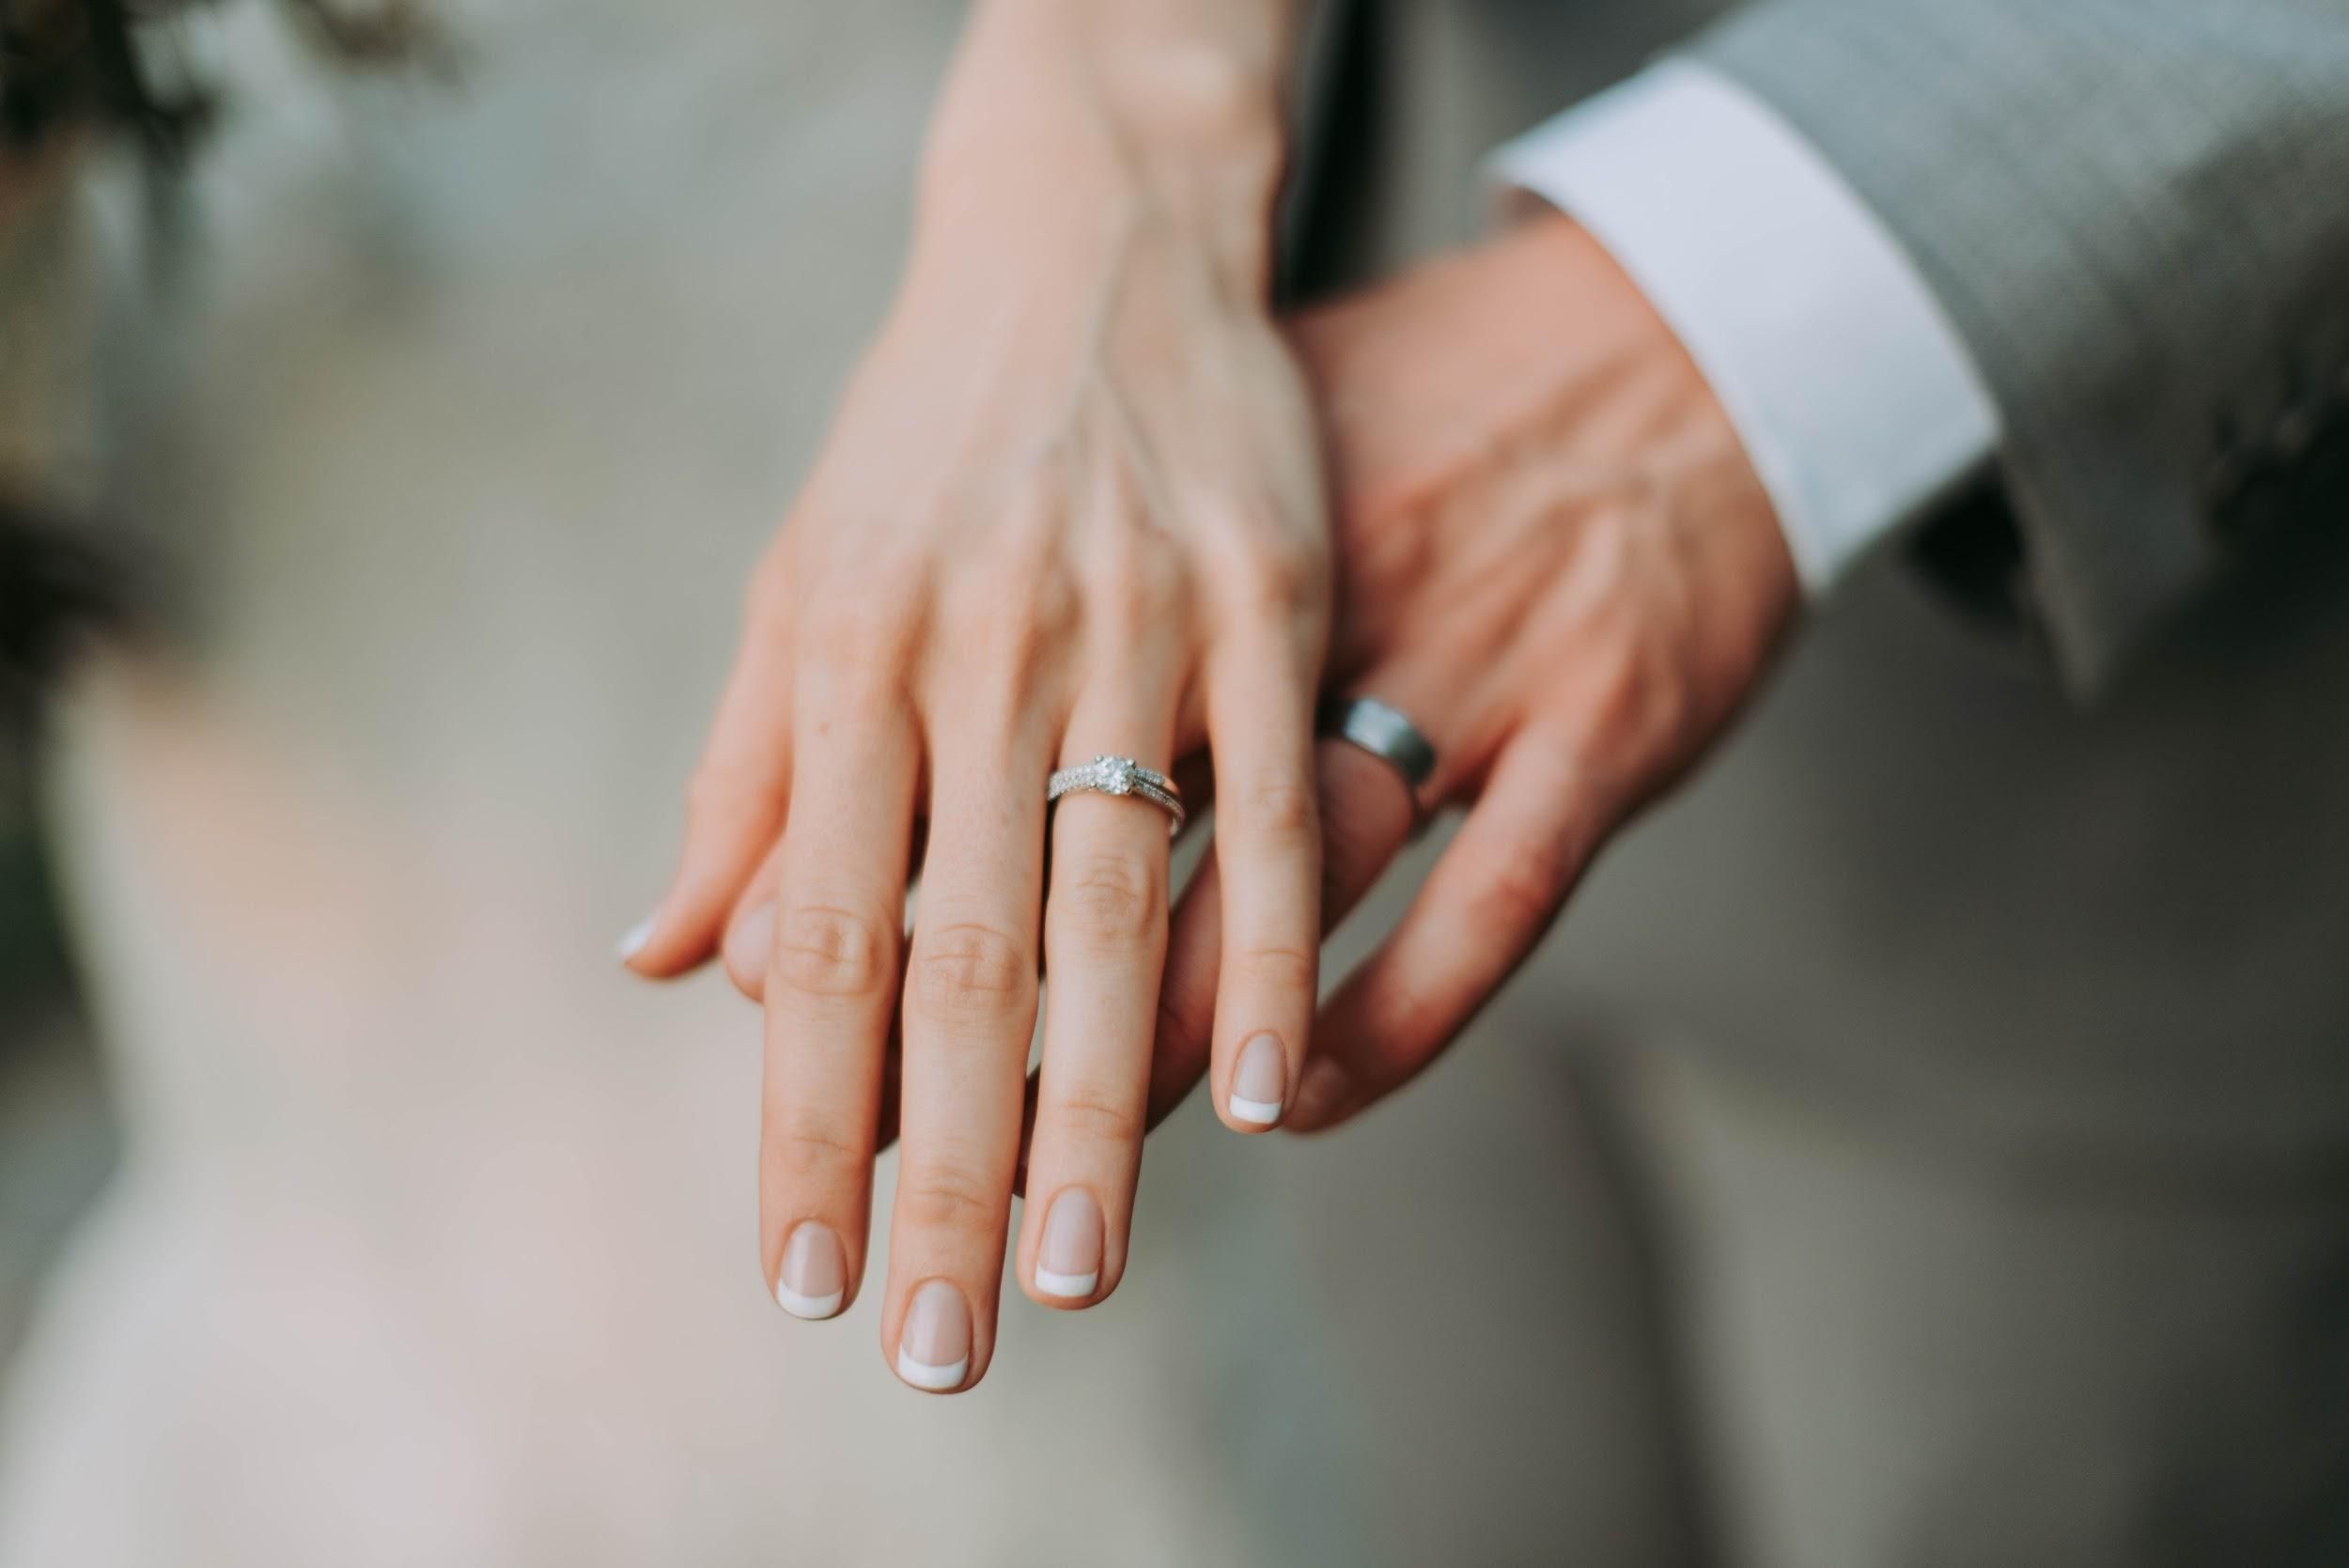 Сколько пар поженились и развелись за время карантина в Украине: позитивные данные